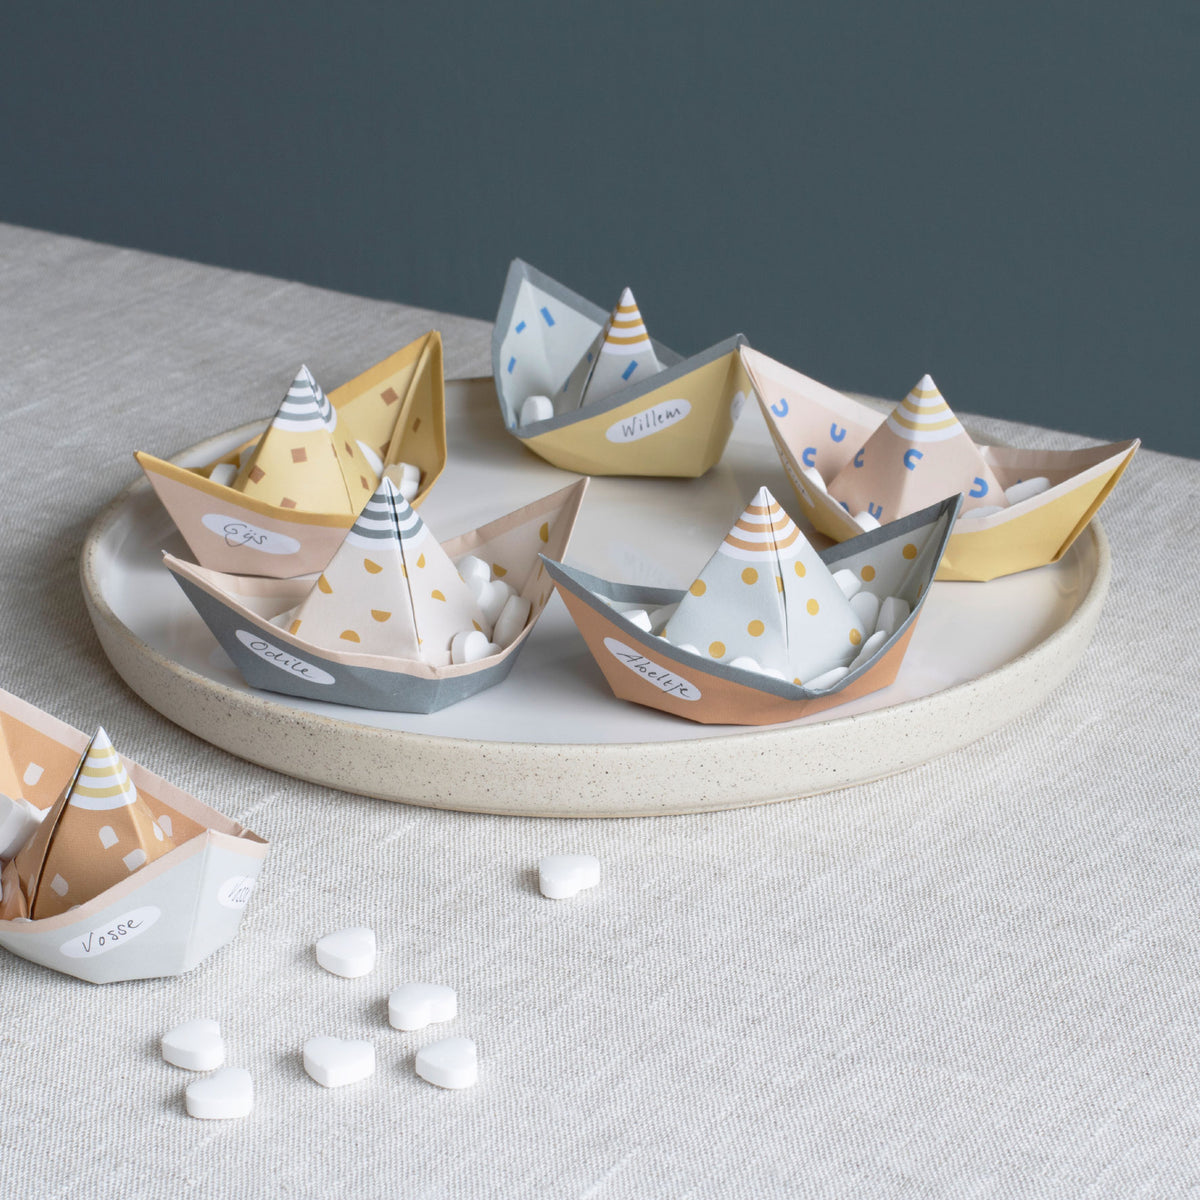 Jurianne Matter - Ornament - Folding Boats - Segel